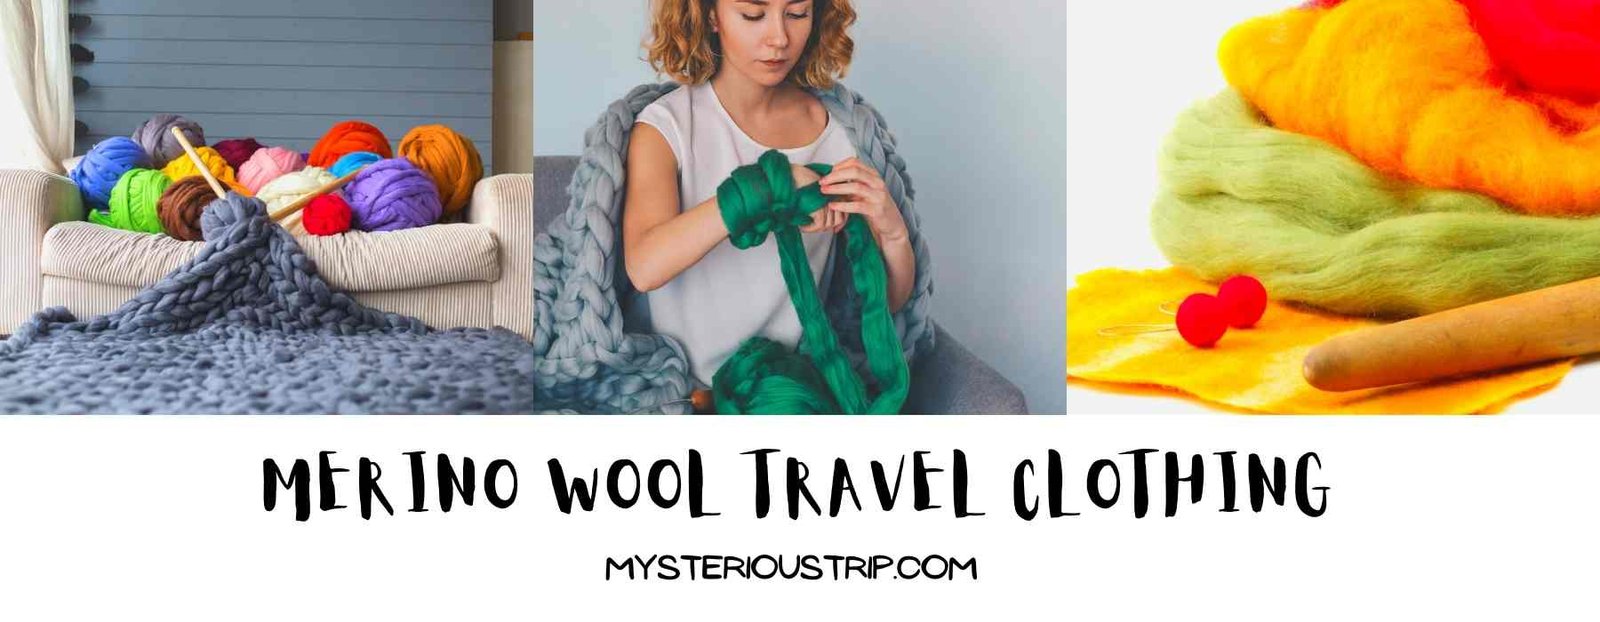 Merino Wool Travel Clothing